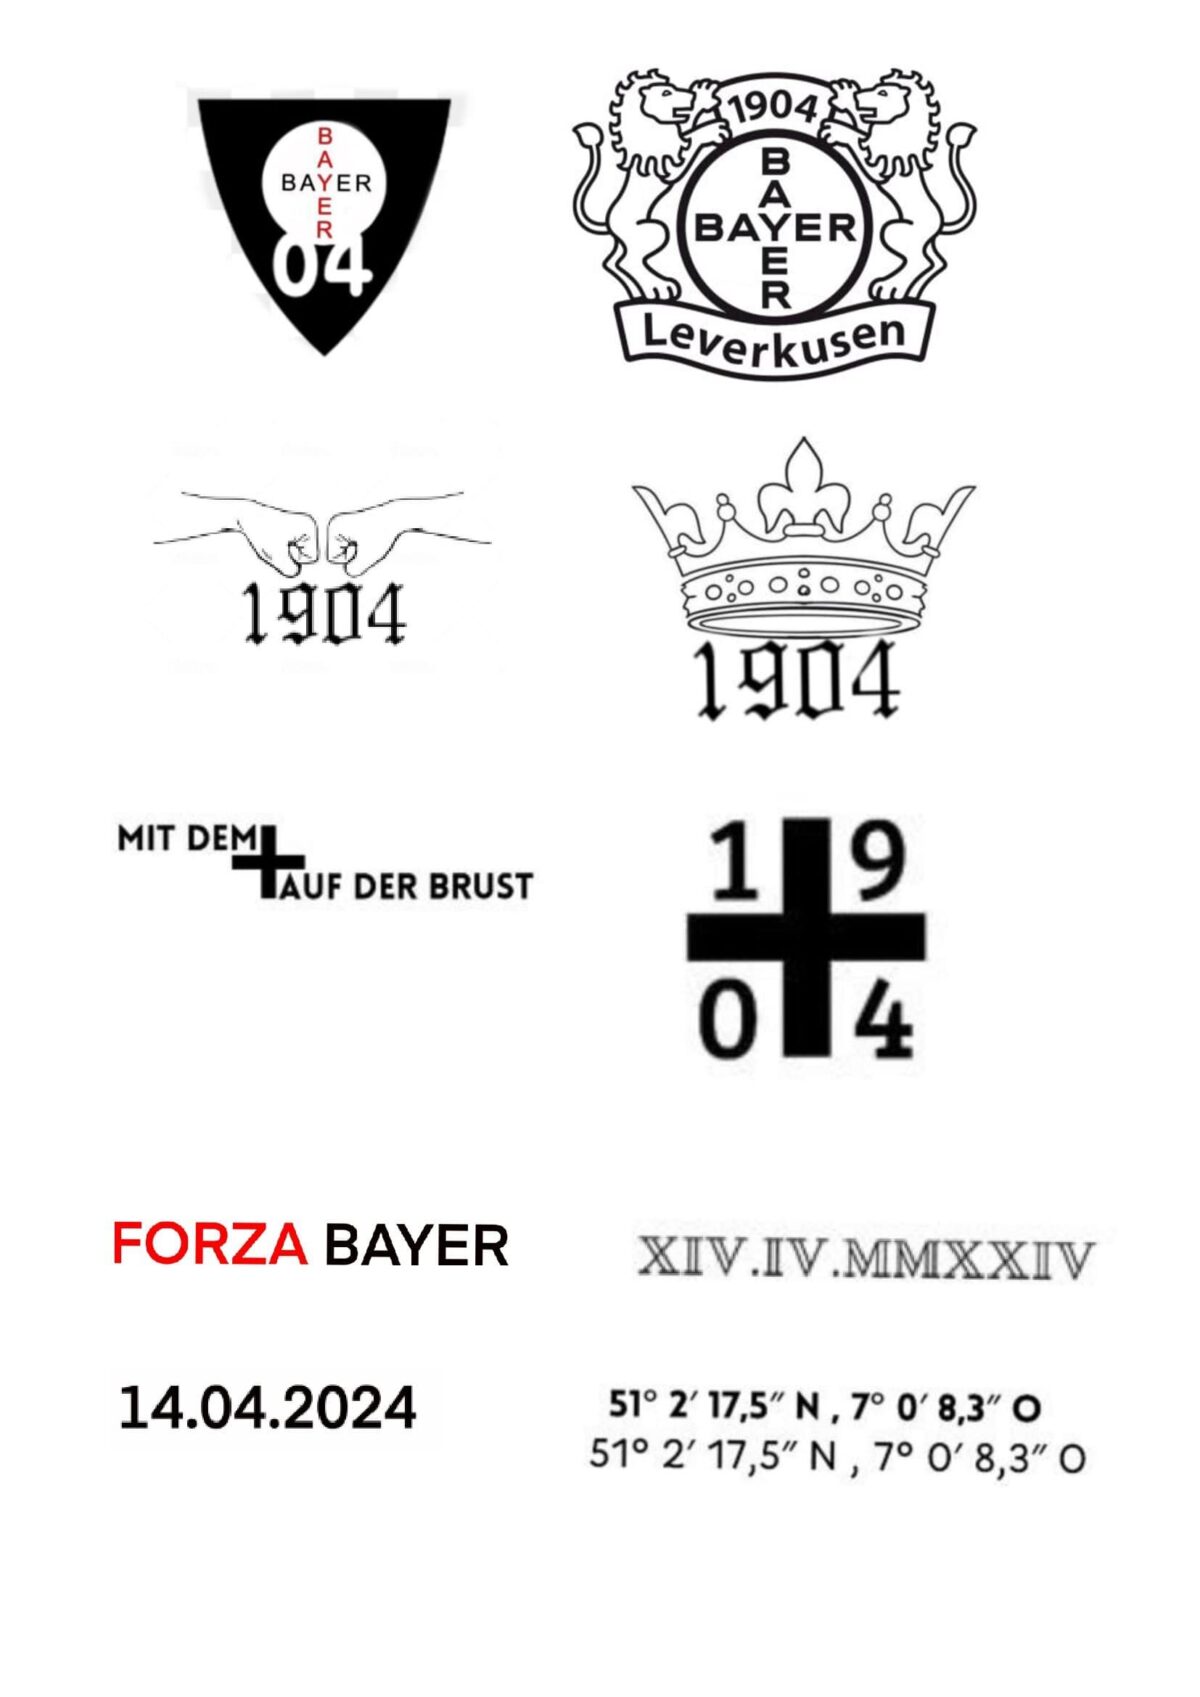 Diseños de tatuajes disponibles para los aficionados del Leverkusen.